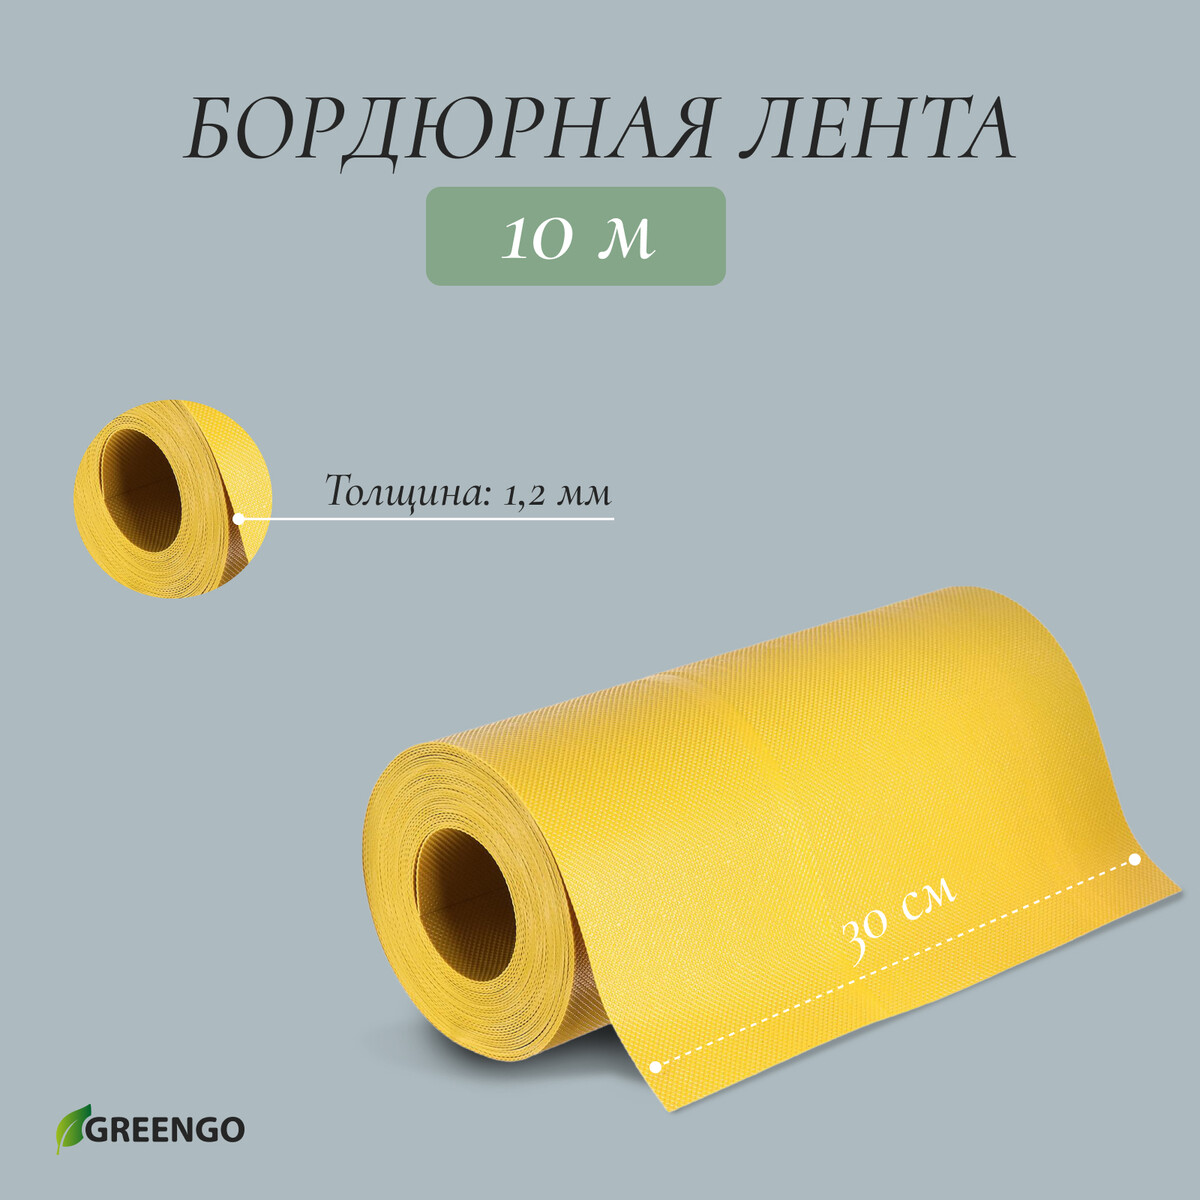 Лента бордюрная, 0.3 × 10 м, толщина 1.2 мм, пластиковая, желтая, greengo лента бордюрная 0 3 × 10 м толщина 1 2 мм пластиковая зеленая greengo